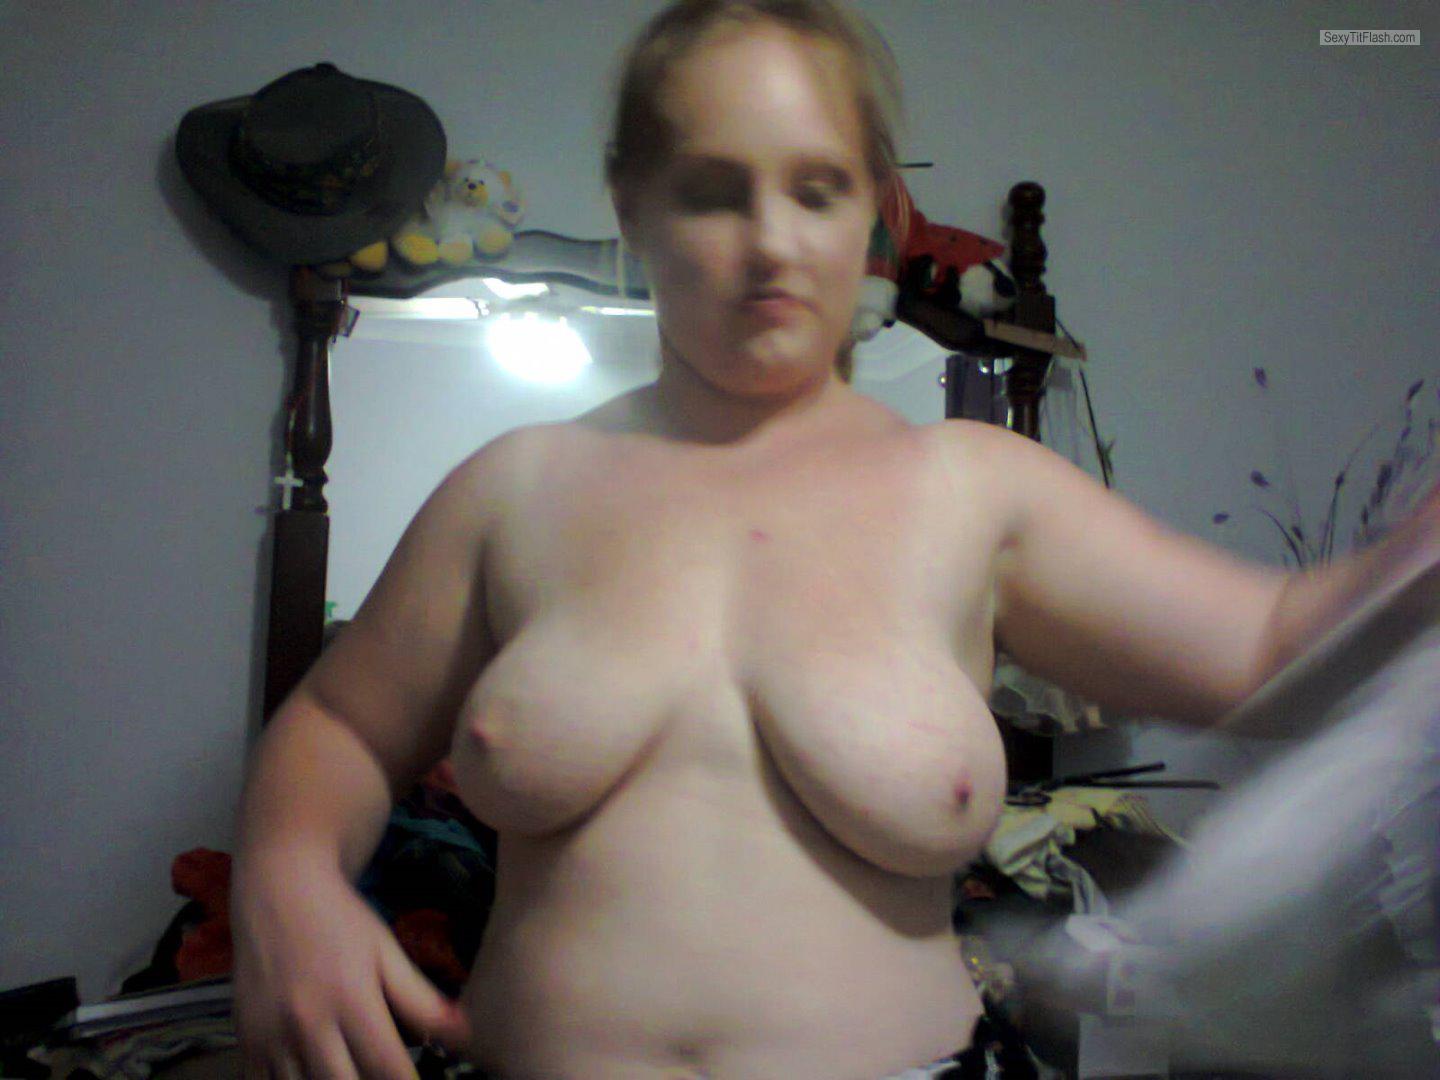 Tit Flash: Room Mate's Big Tits - Topless Kez from Australia